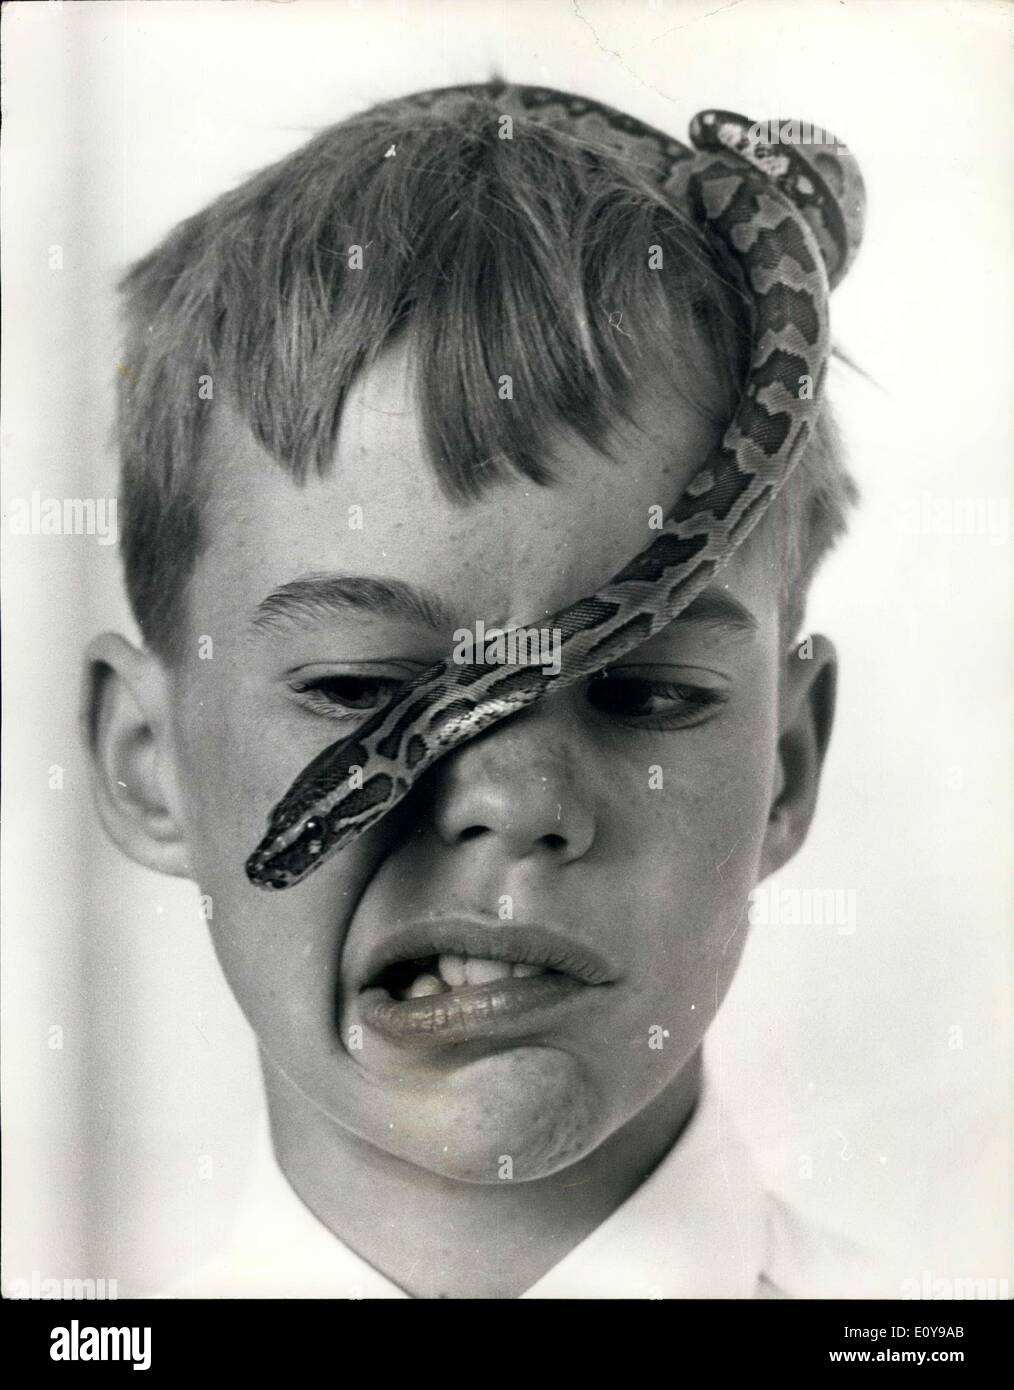 28 août 1969 - à venir face à face avec un python : Les enfants sont allés à l'Hôtel Savoy - hier, beaucoup d'entre eux avec leur animal de serpents - pour une réception pour le lancement d'un nouveau livre qui sera publié demain par le groupe Hamlyn, dont l'objectif est d'encourager les enfants à propre non-serpents venimeux et ainsi devenir les herpétologistes. Photo montre 10 ans Stephen Jopham, de Smallfield, Surrey - utilise ses yeux aussi loin que possible, alors qu'il regardait son African rock python glisser sur sa tête. Banque D'Images